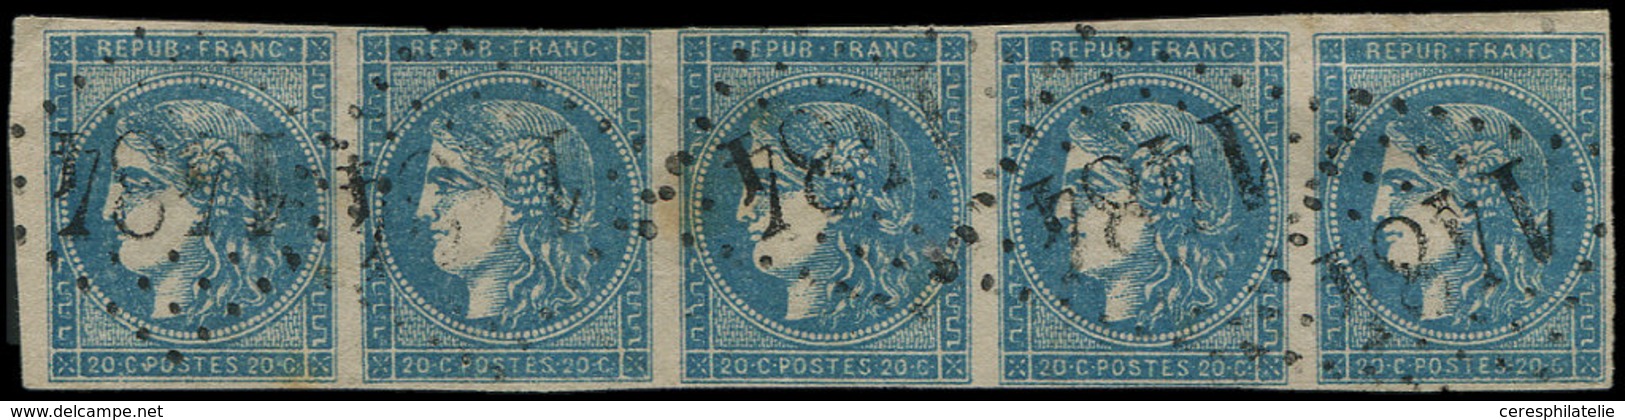 EMISSION DE BORDEAUX - 45C  20c. Bleu, T II R III, BANDE De 5 Obl. GC 1484, Filet Effleuré S. 2e T., RR En Bande, TB, Co - 1870 Emission De Bordeaux